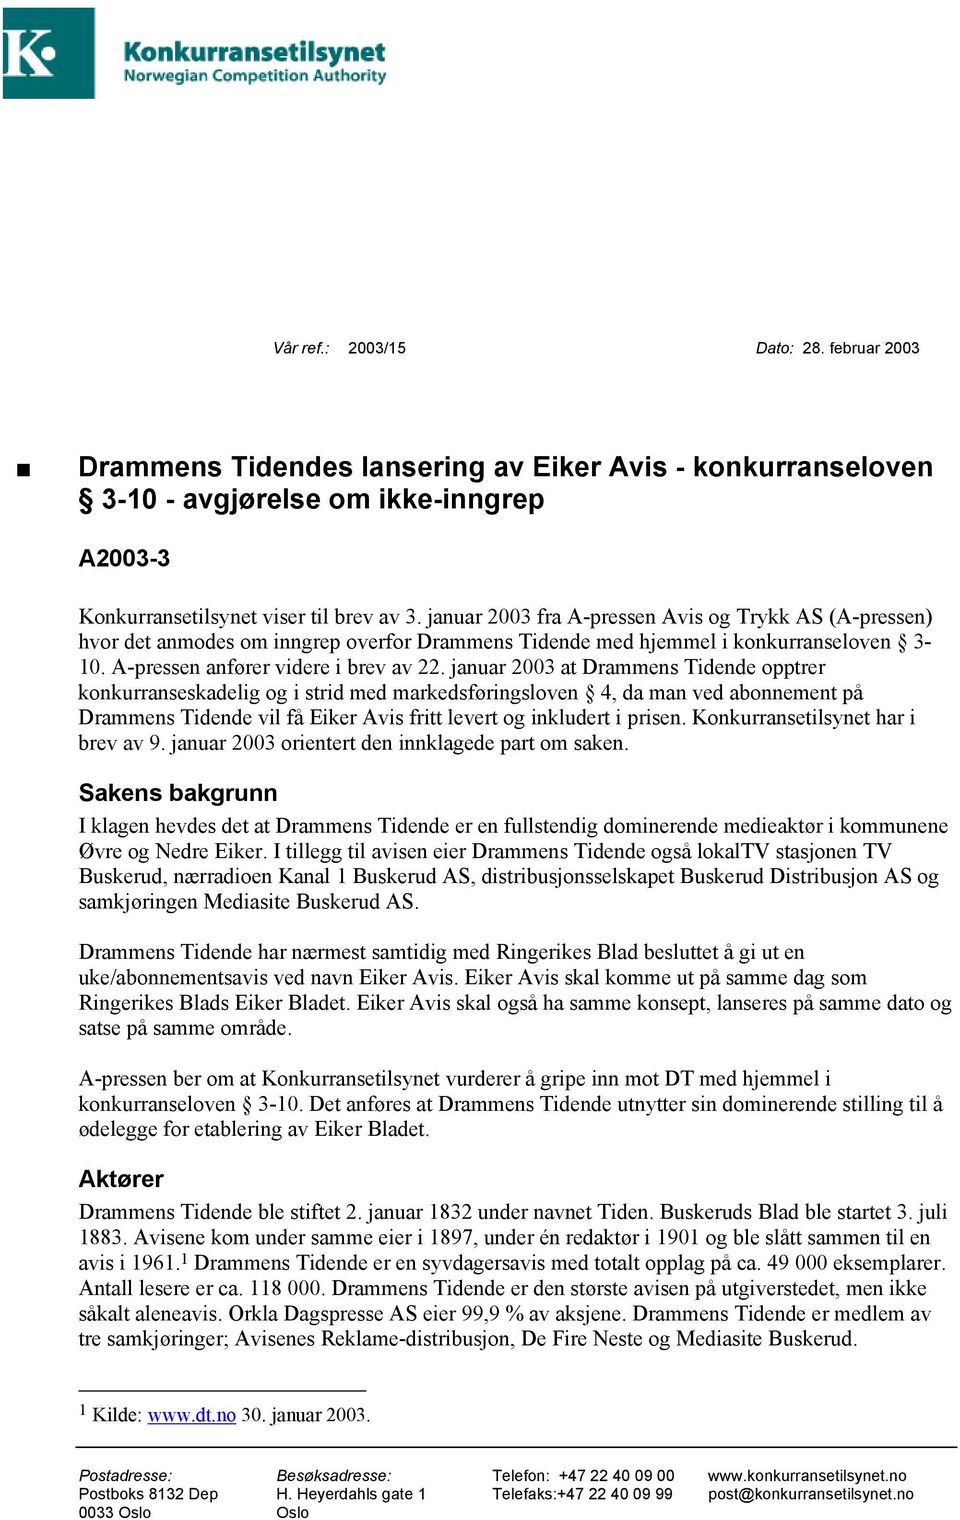 januar 2003 at Drammens Tidende opptrer konkurranseskadelig og i strid med markedsføringsloven 4, da man ved abonnement på Drammens Tidende vil få Eiker Avis fritt levert og inkludert i prisen.